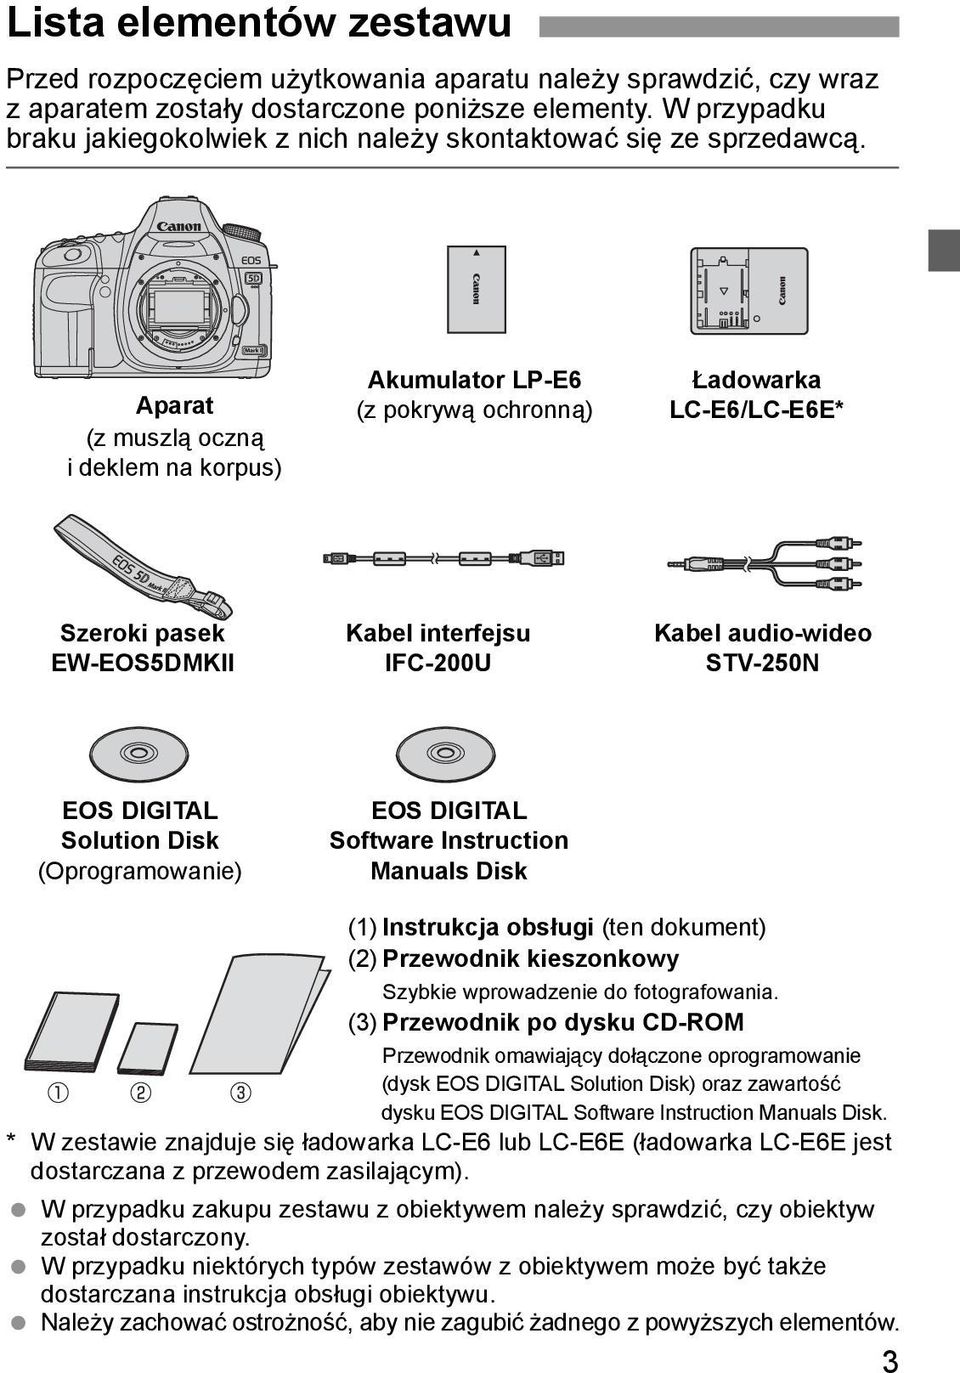 Aparat (z muszlą oczną i deklem na korpus) Akumulator LP-E6 (z pokrywą ochronną) Ładowarka LC-E6/LC-E6E* Szeroki pasek EW-EOS5DMKII Kabel interfejsu IFC-200U Kabel audio-wideo STV-250N EOS DIGITAL